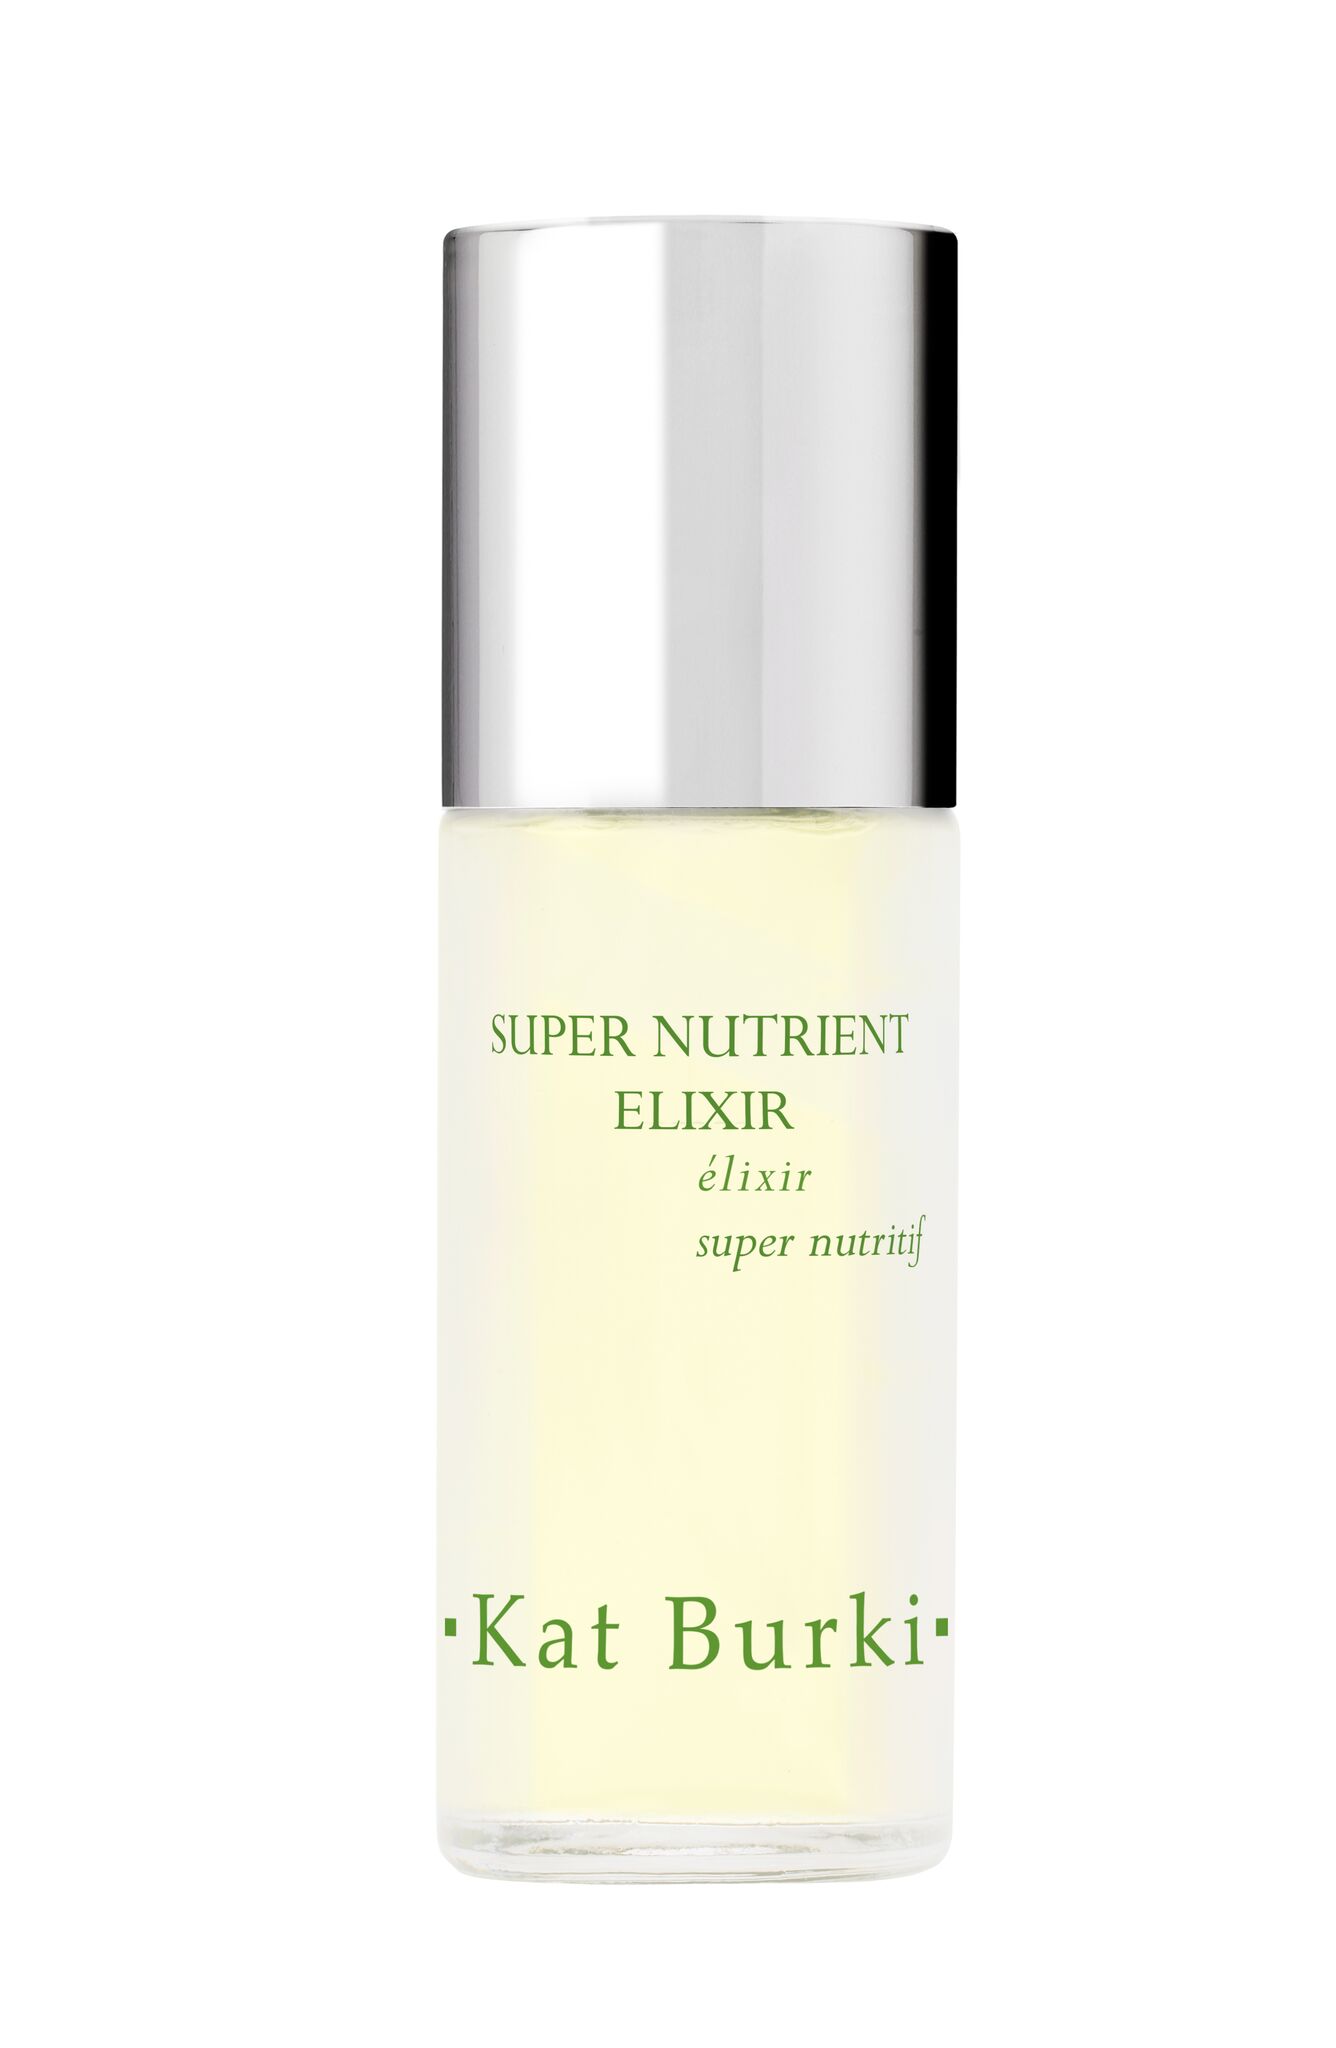 Kat Burki’s Super Nutrient Elixir